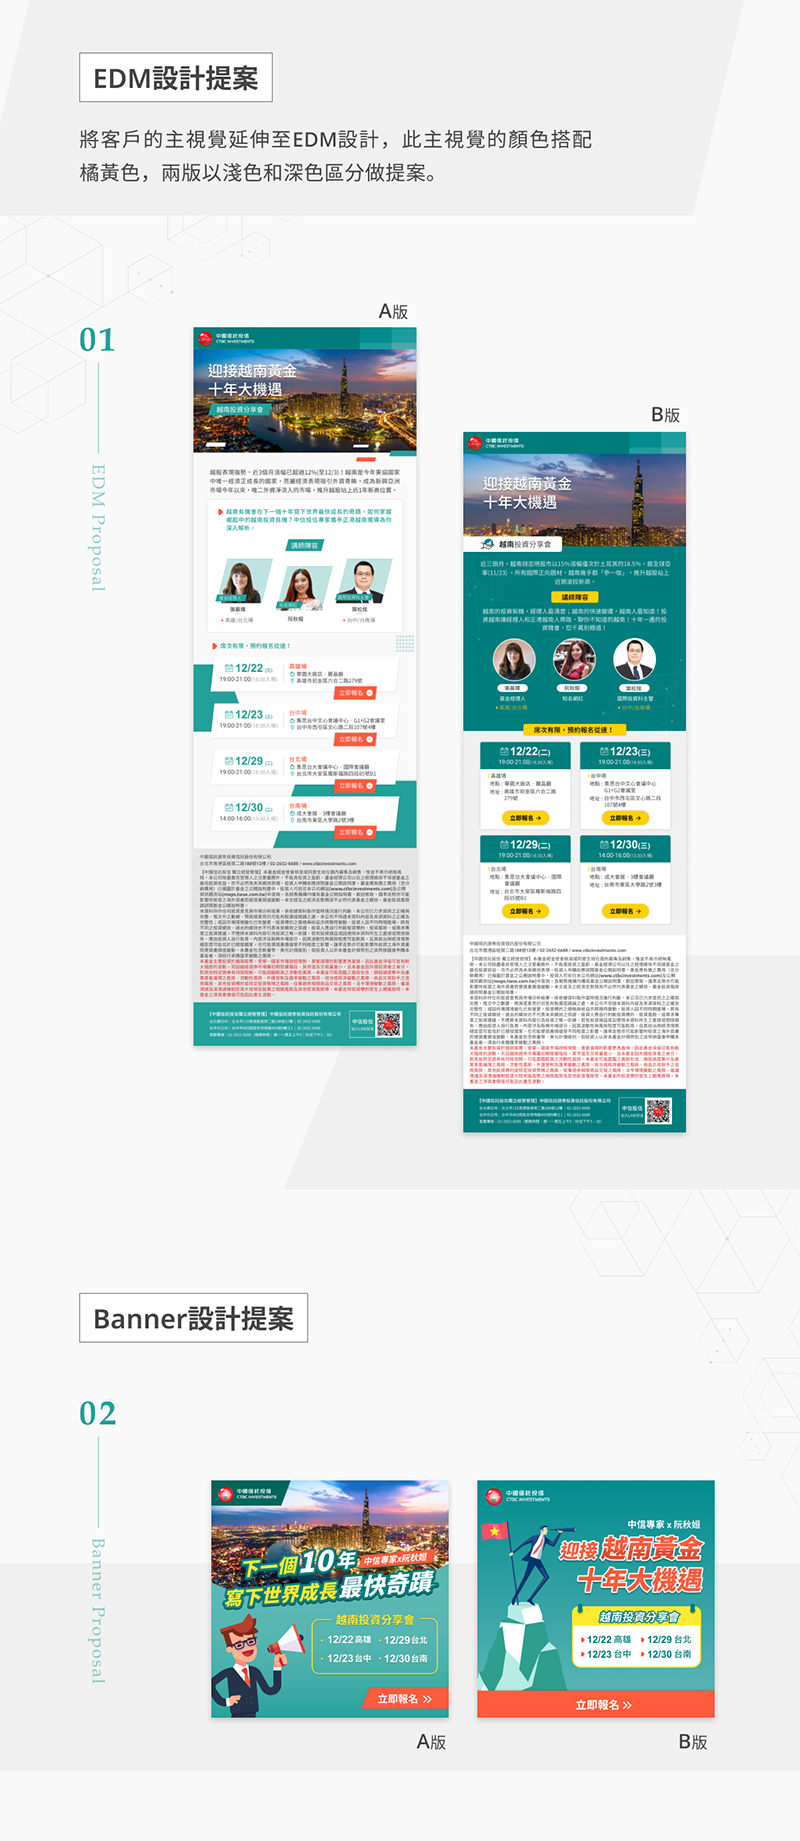 中國信託投信 越南投資分享會 EDM 平面設計